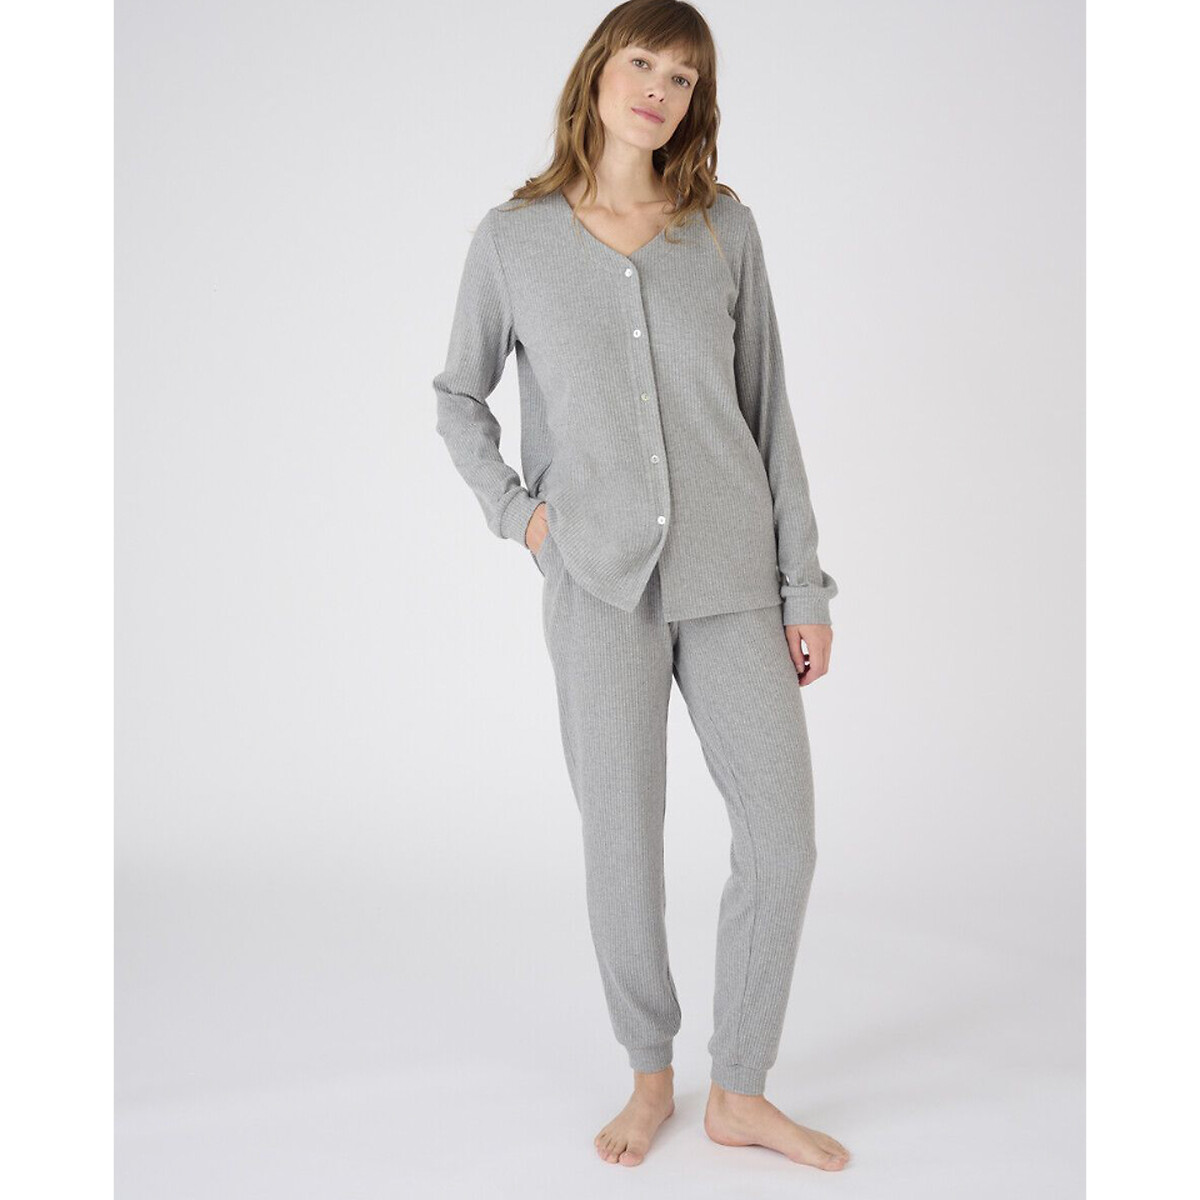 Комплект пижамный, Thermolactyl La Redoute L серый комплект пижамный с длинными рукавами la redoute xl синий